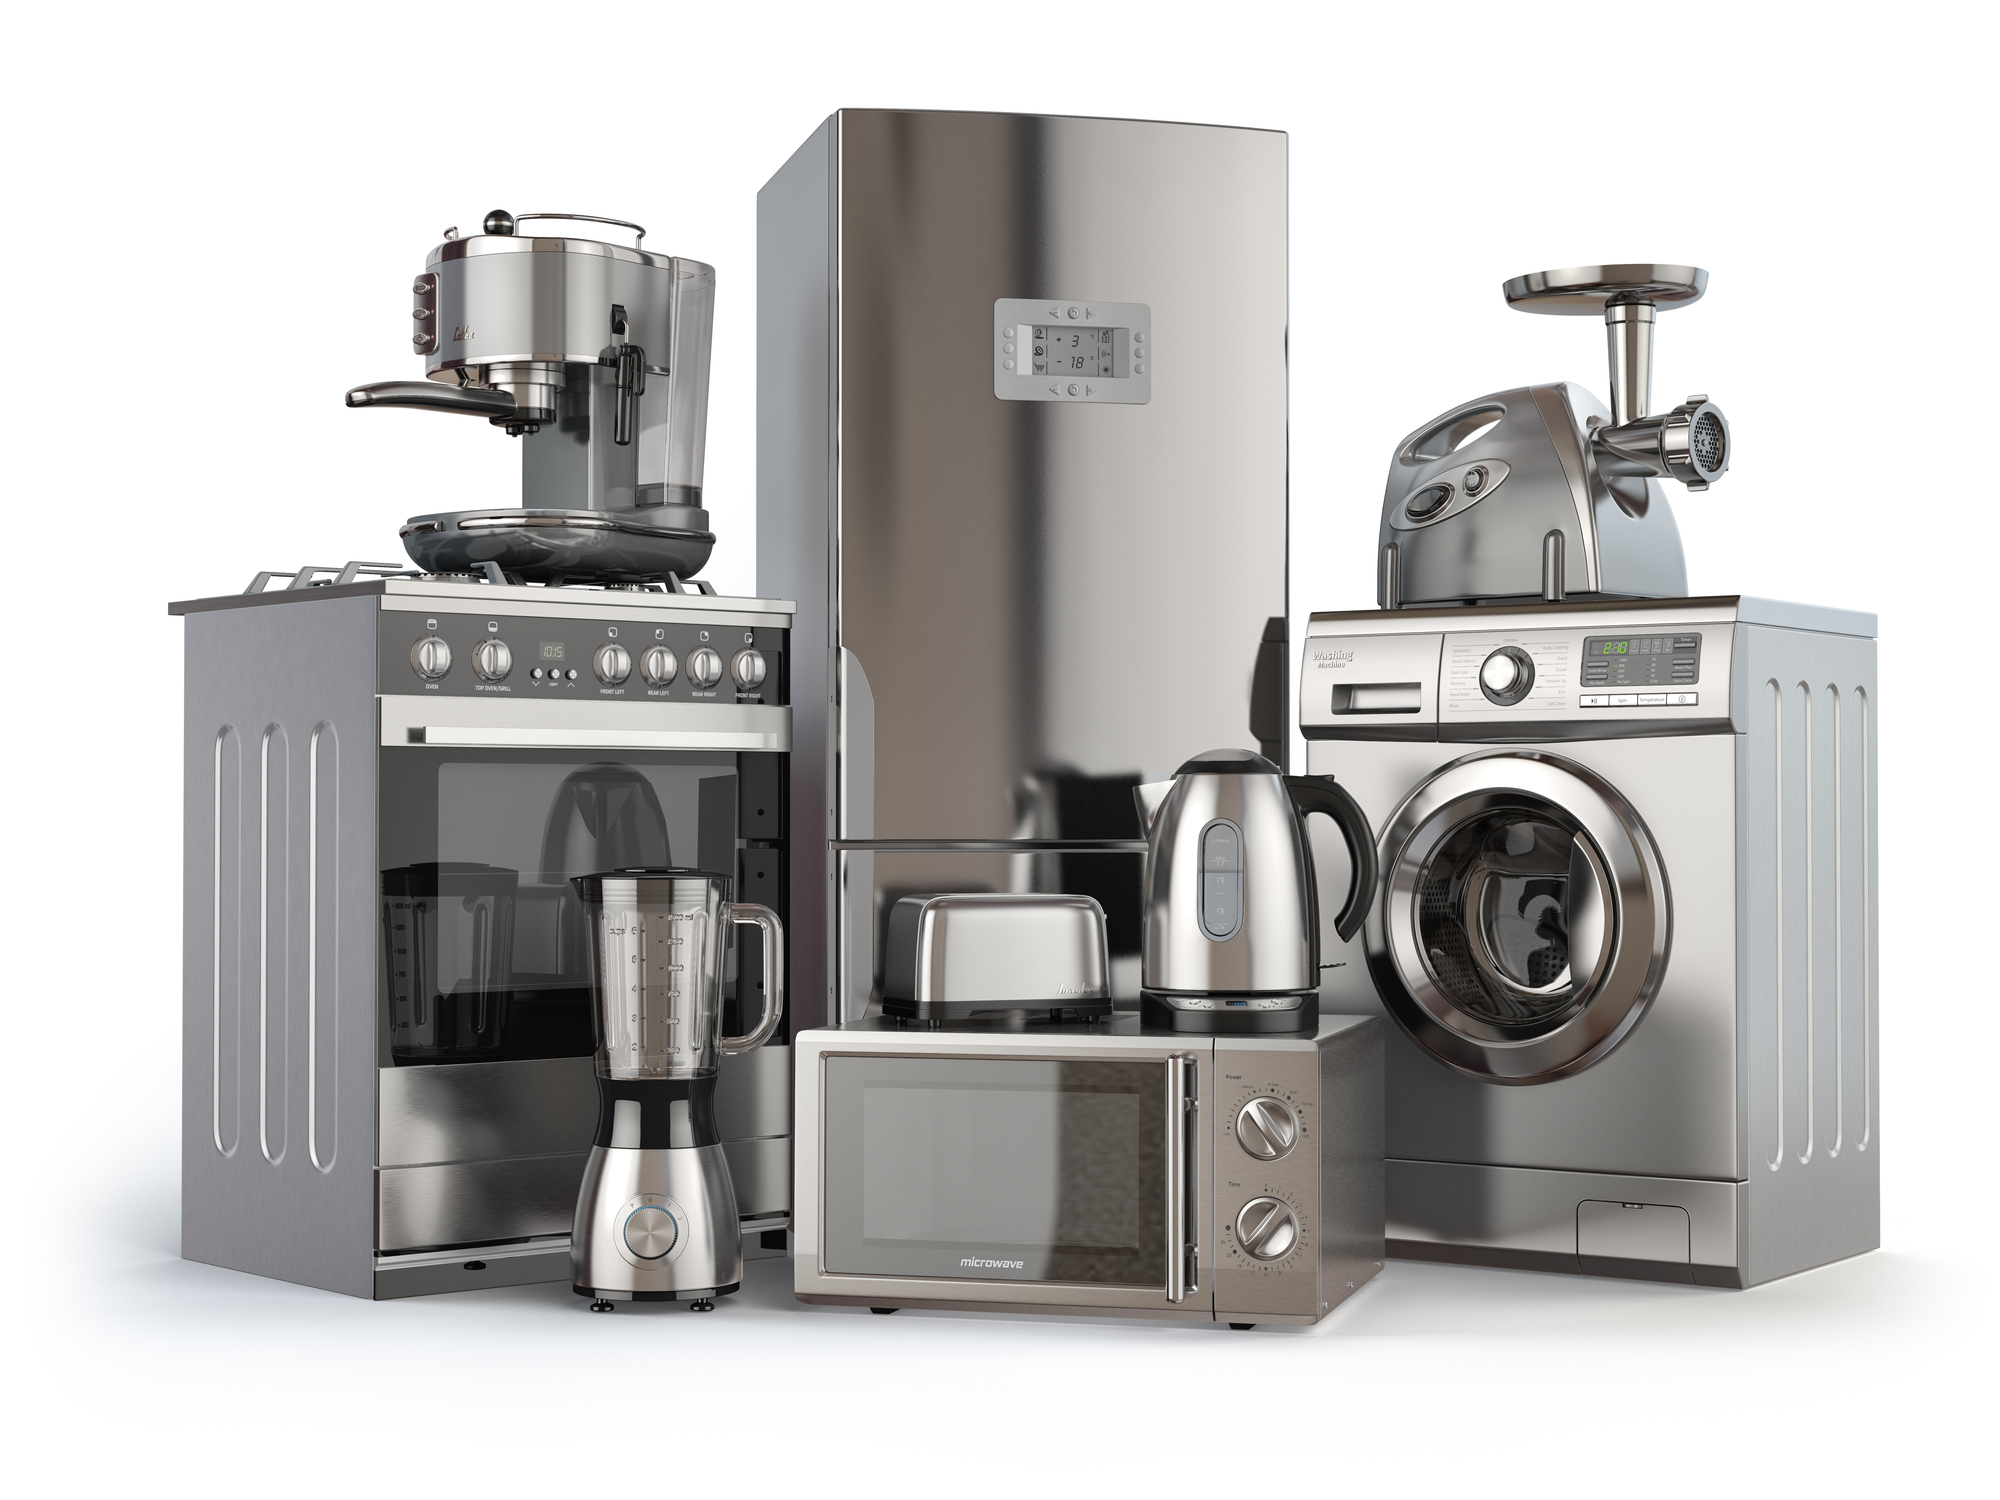 presale-of-home-appliances-launched-financial-tribune